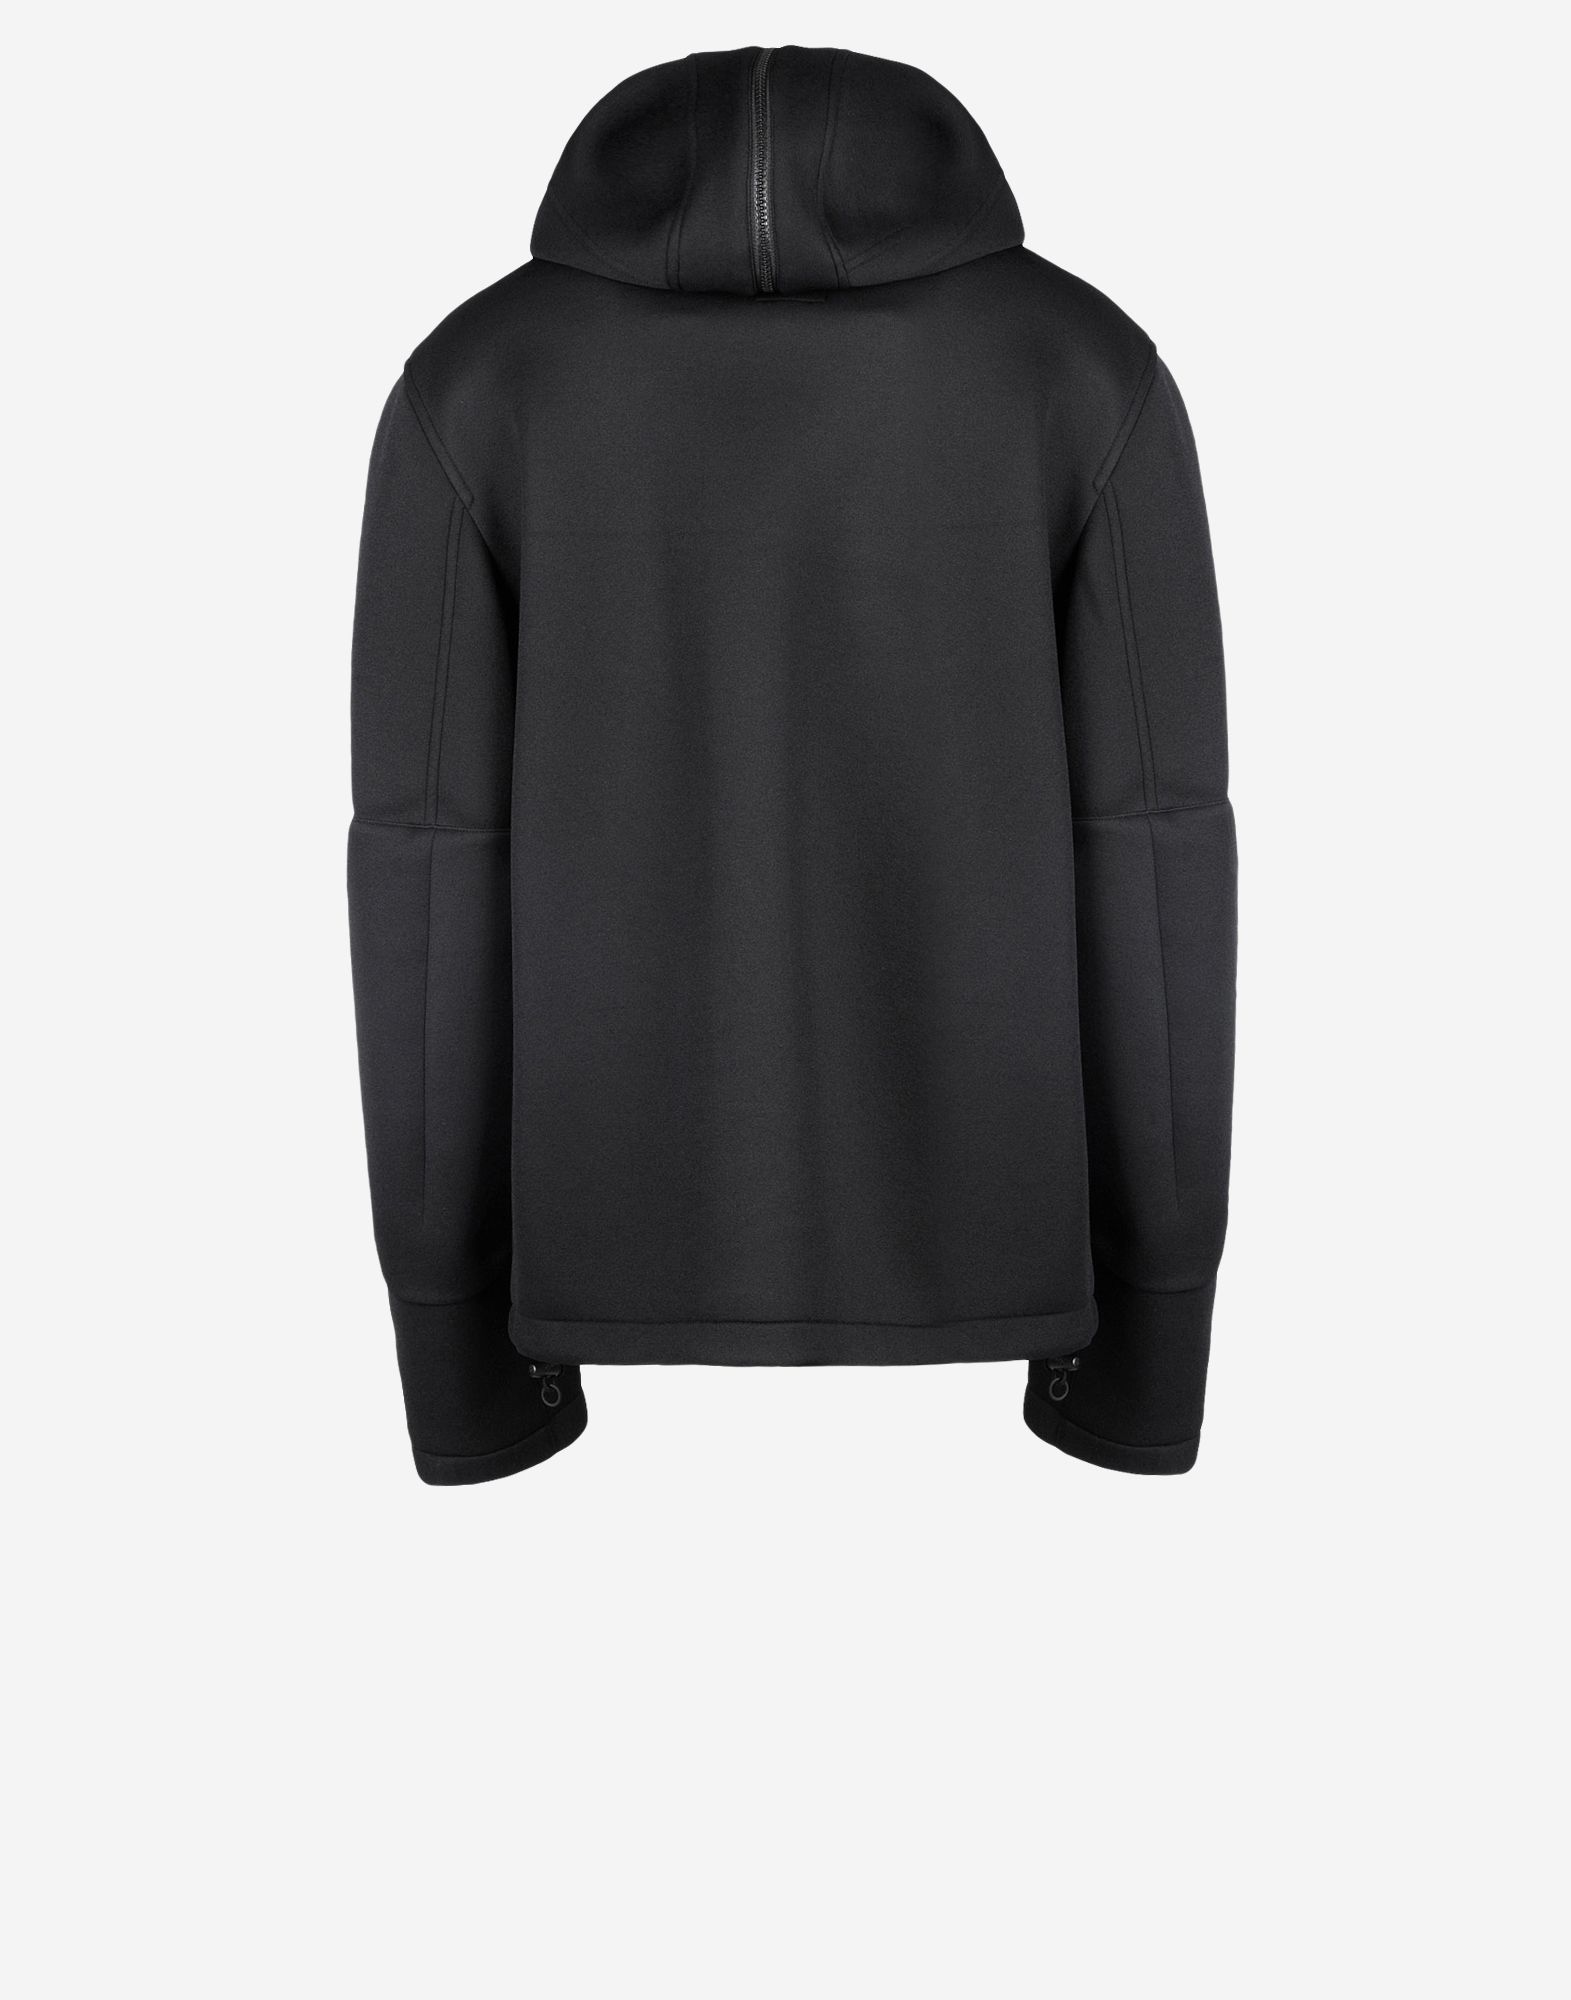 Y 3 Neop. Hoodie Jacket ‎ ‎Jackets‎ ‎ ‎ | Adidas Y-3 Official Site